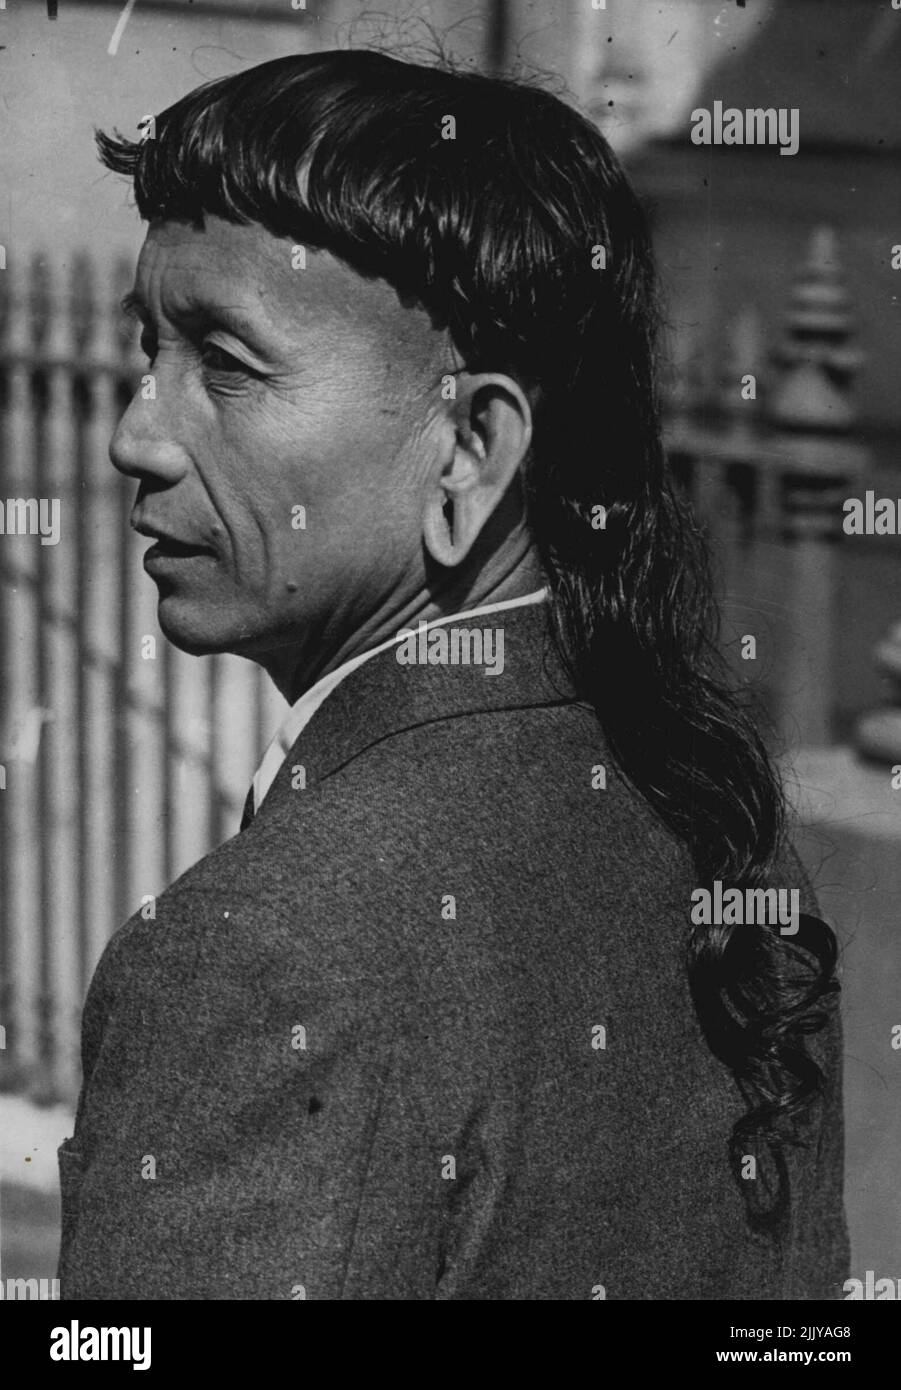 R. Long Haired Visitor - mit seinen tiefschwarzen Haaren, die auf dem Rücken hängen, ist Penghulu Jugah, dessen Vorfahren Dyak-Kopfjäger in Borneo waren, heute in London zu sehen. Er ist als Gast der britischen Regierung hierher gekommen, um die Krönung zu sehen. 20.Mai 1953. (Foto von Daily Mail Contact Picture). Stockfoto